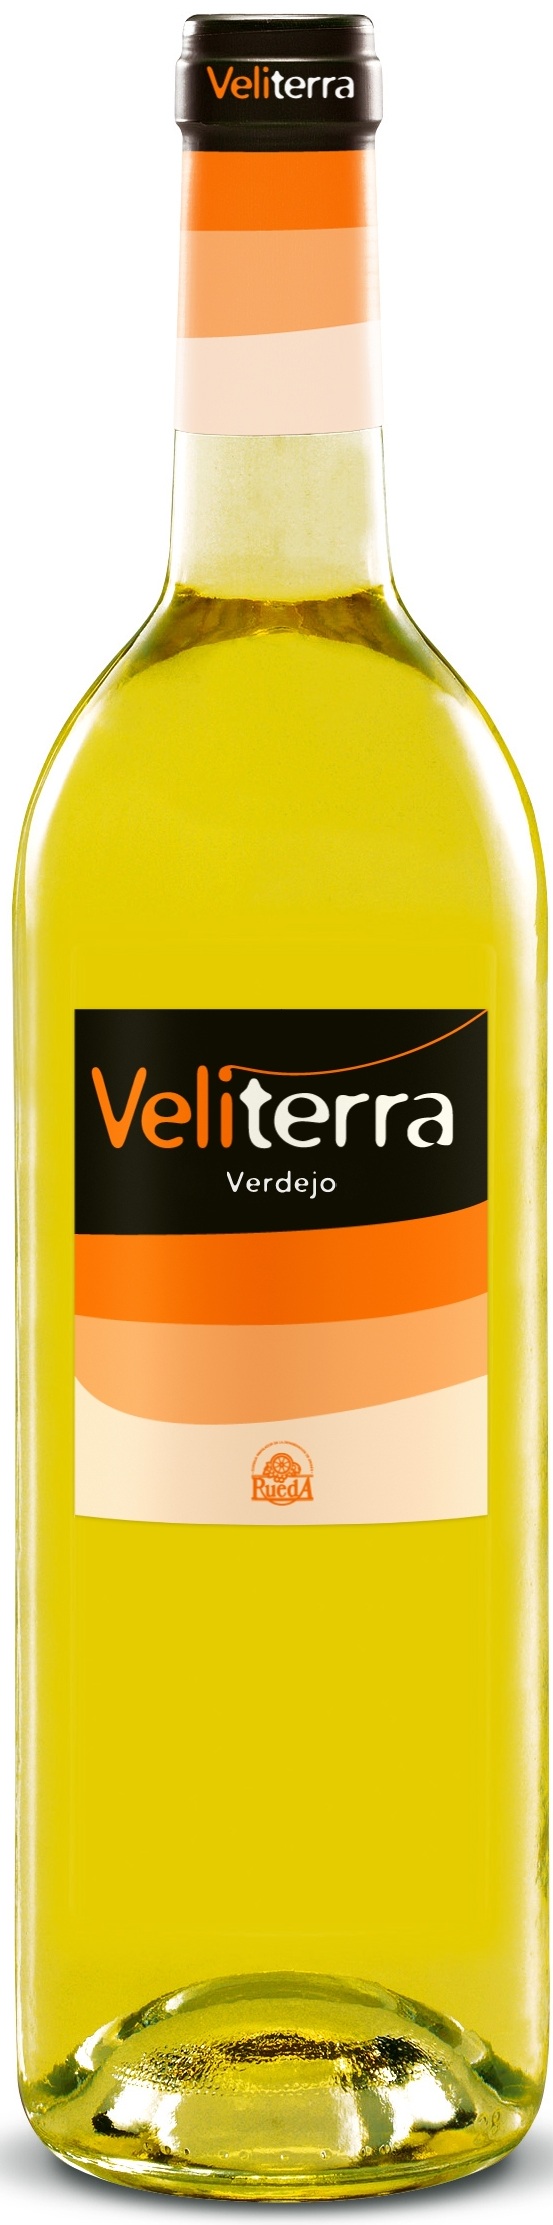 Image of Wine bottle Veliterra